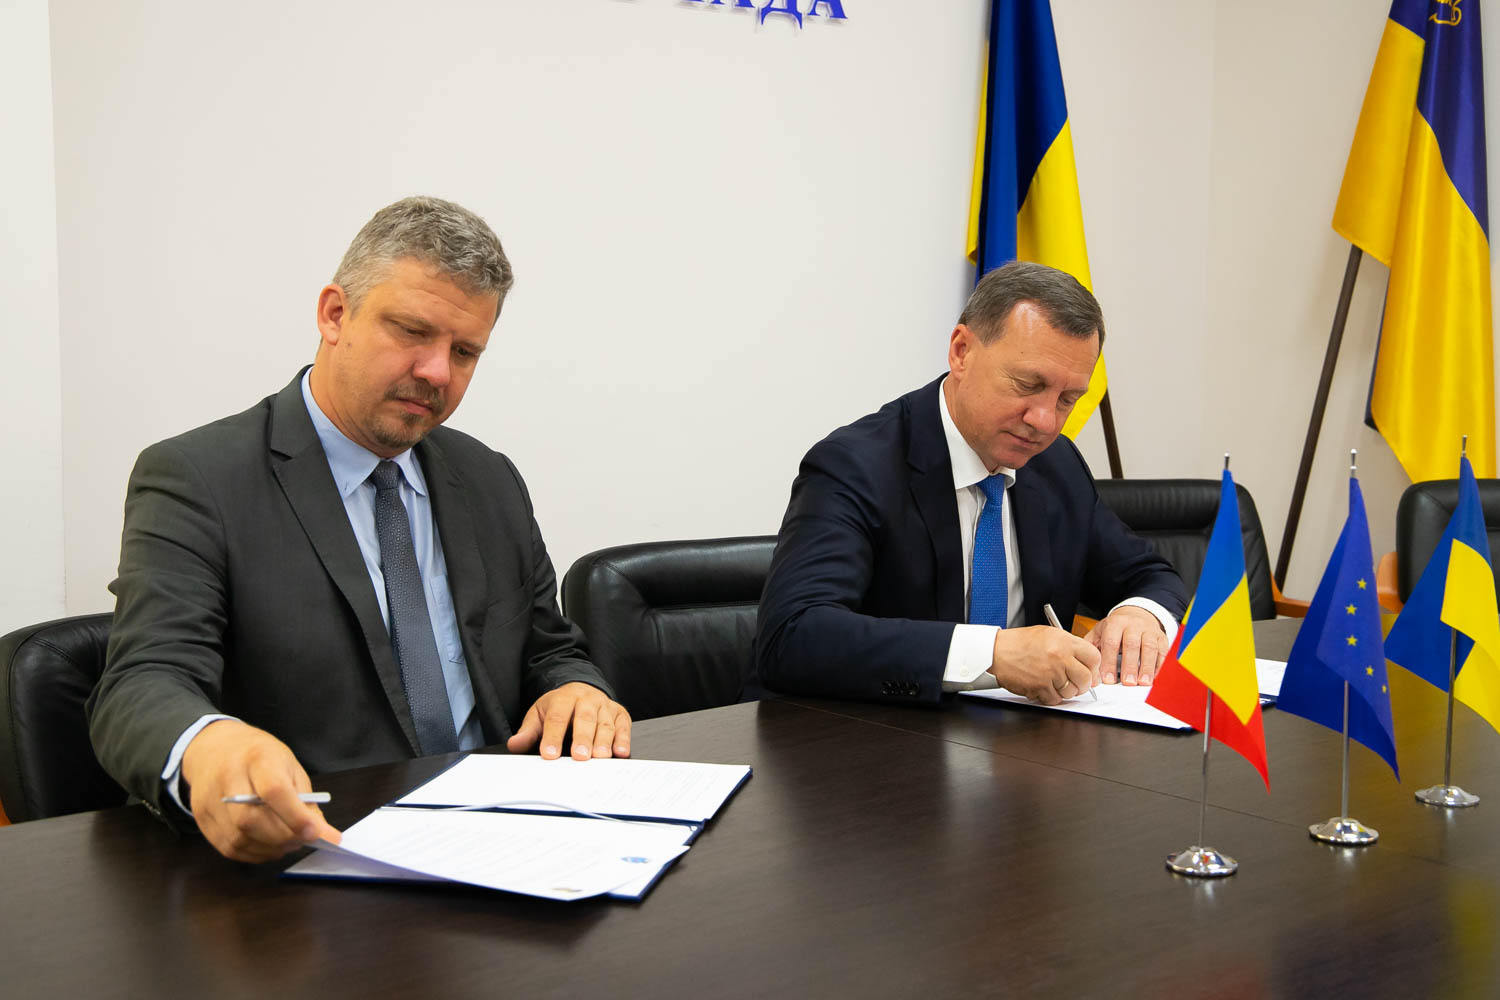 Ужгород і румунський Тиргу-Муреш підписали угоду про співпрацю (ФОТО)